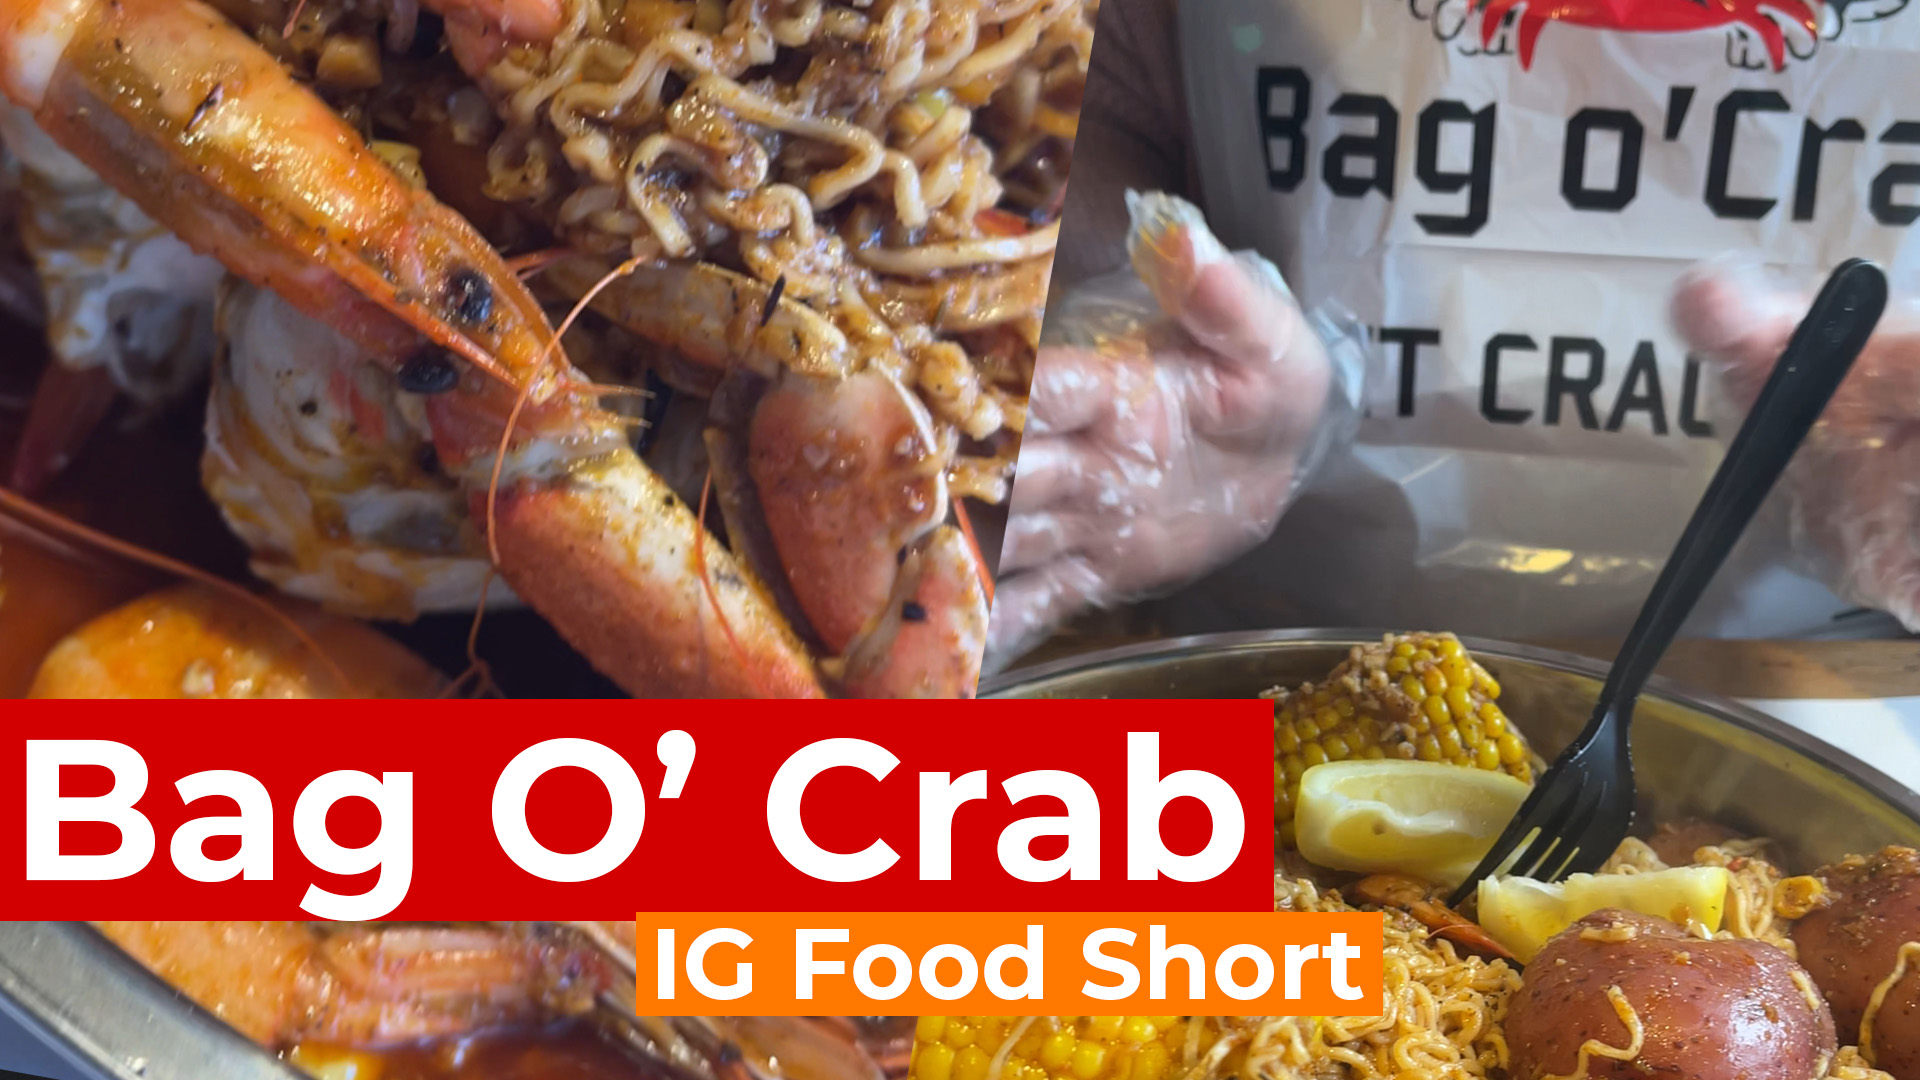 Bag O' Crab Santa Rosa thumbnail.